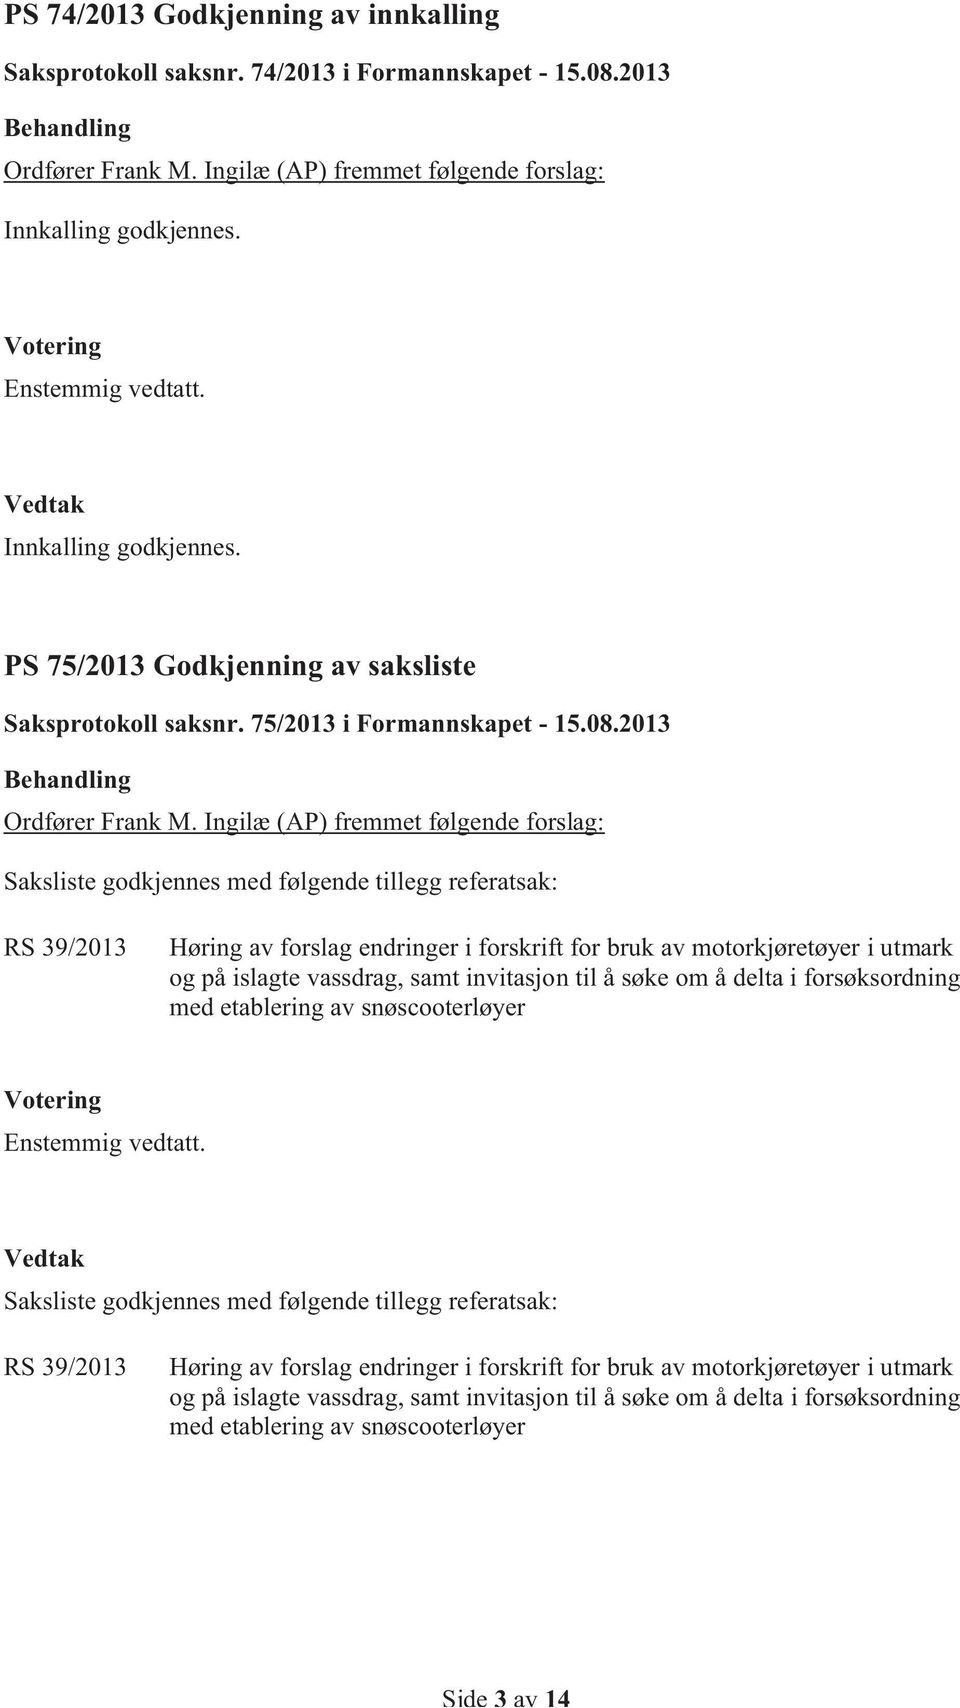 Ingilæ (AP) fremmet følgende forslag: Saksliste godkjennes med følgende tillegg referatsak: RS 39/2013 Høring av forslag endringer i forskrift for bruk av motorkjøretøyer i utmark og på islagte